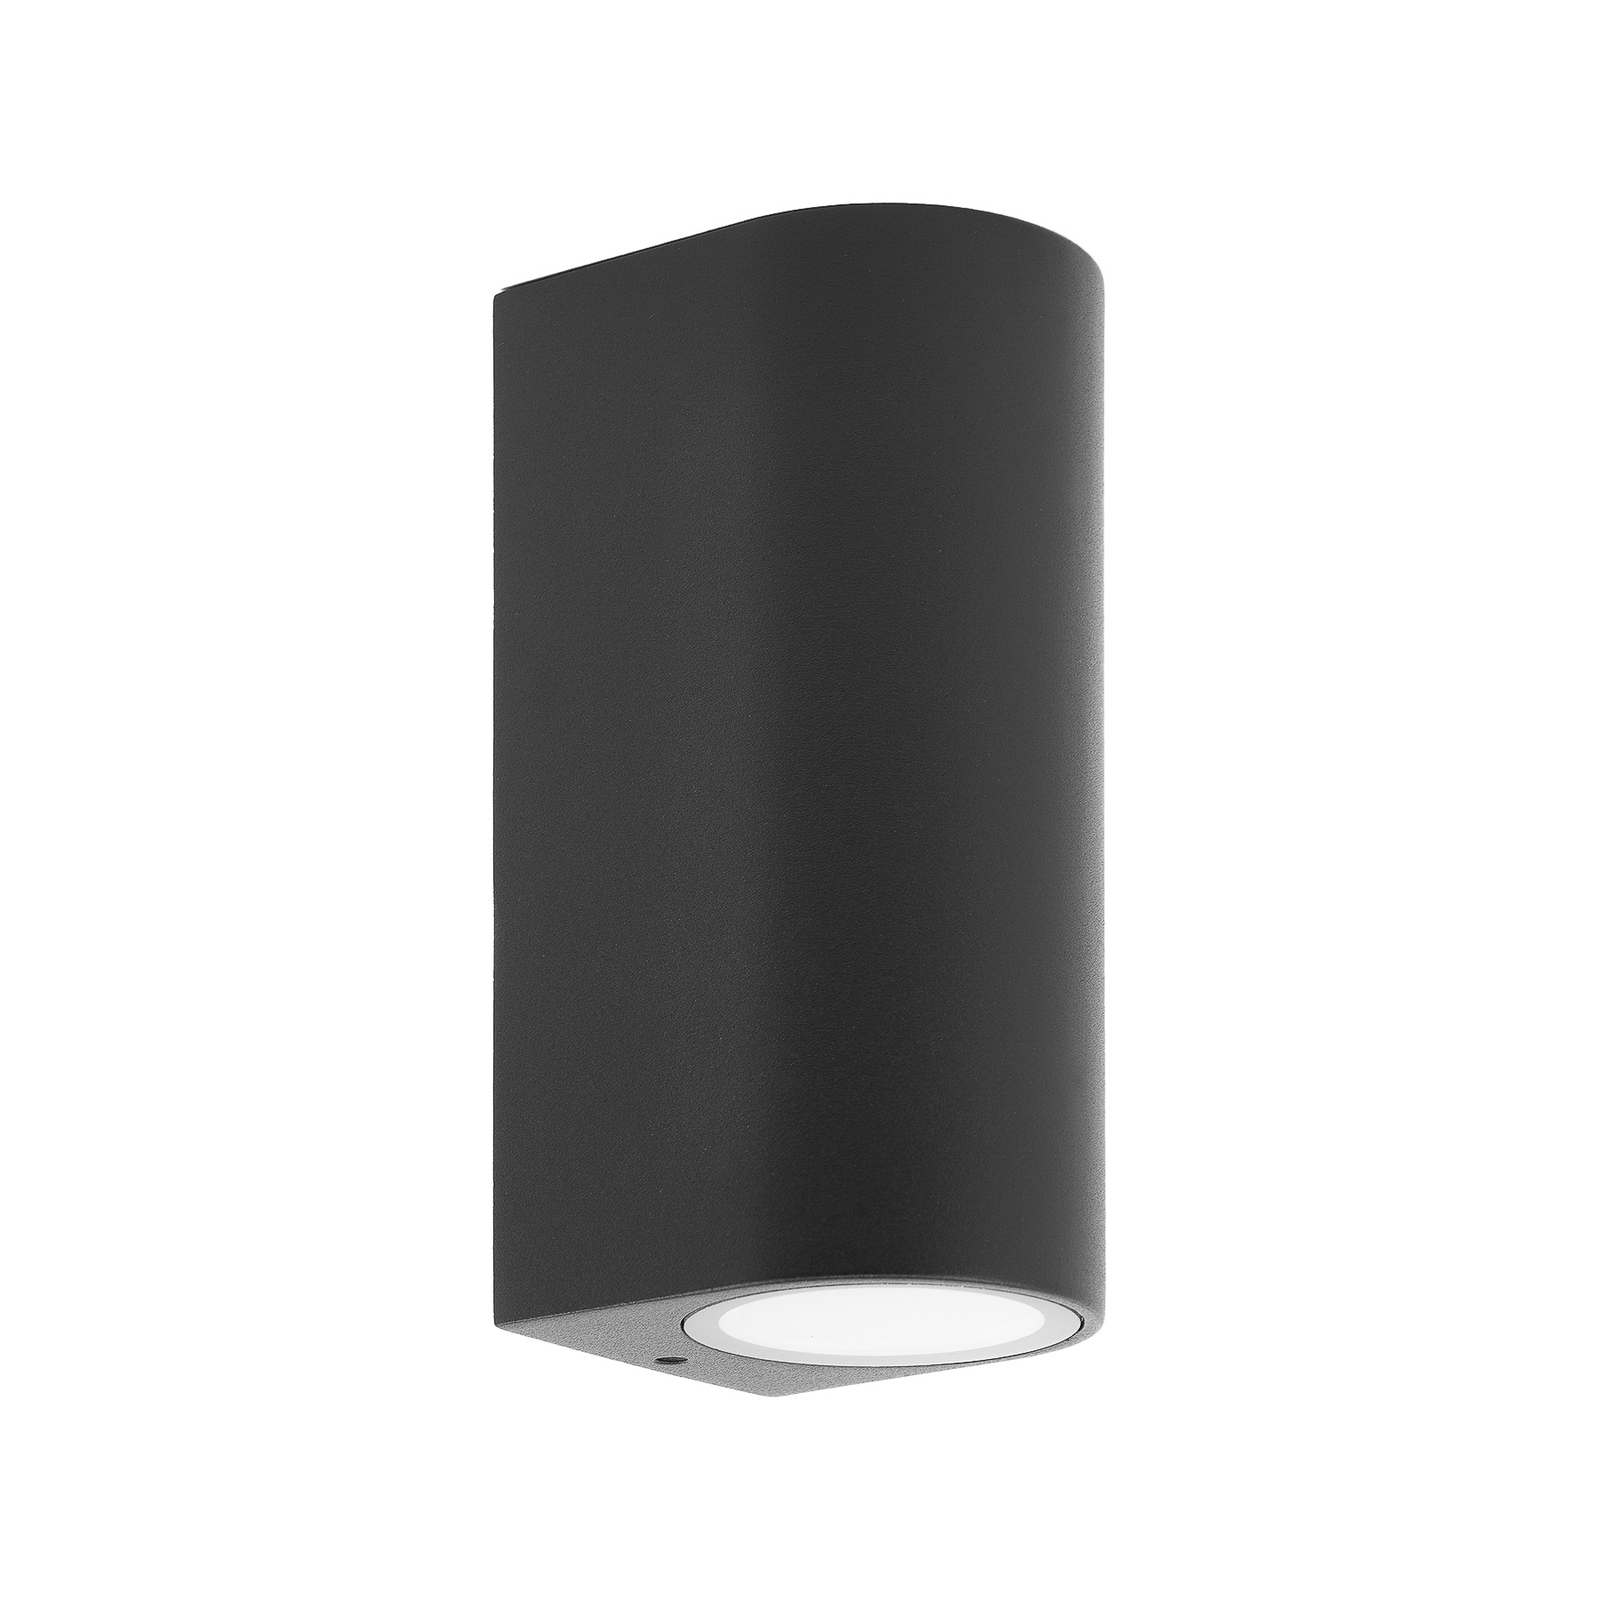 Prios kültéri fali lámpa Tetje, fekete, kerek, 16 cm, 4 darabos szett